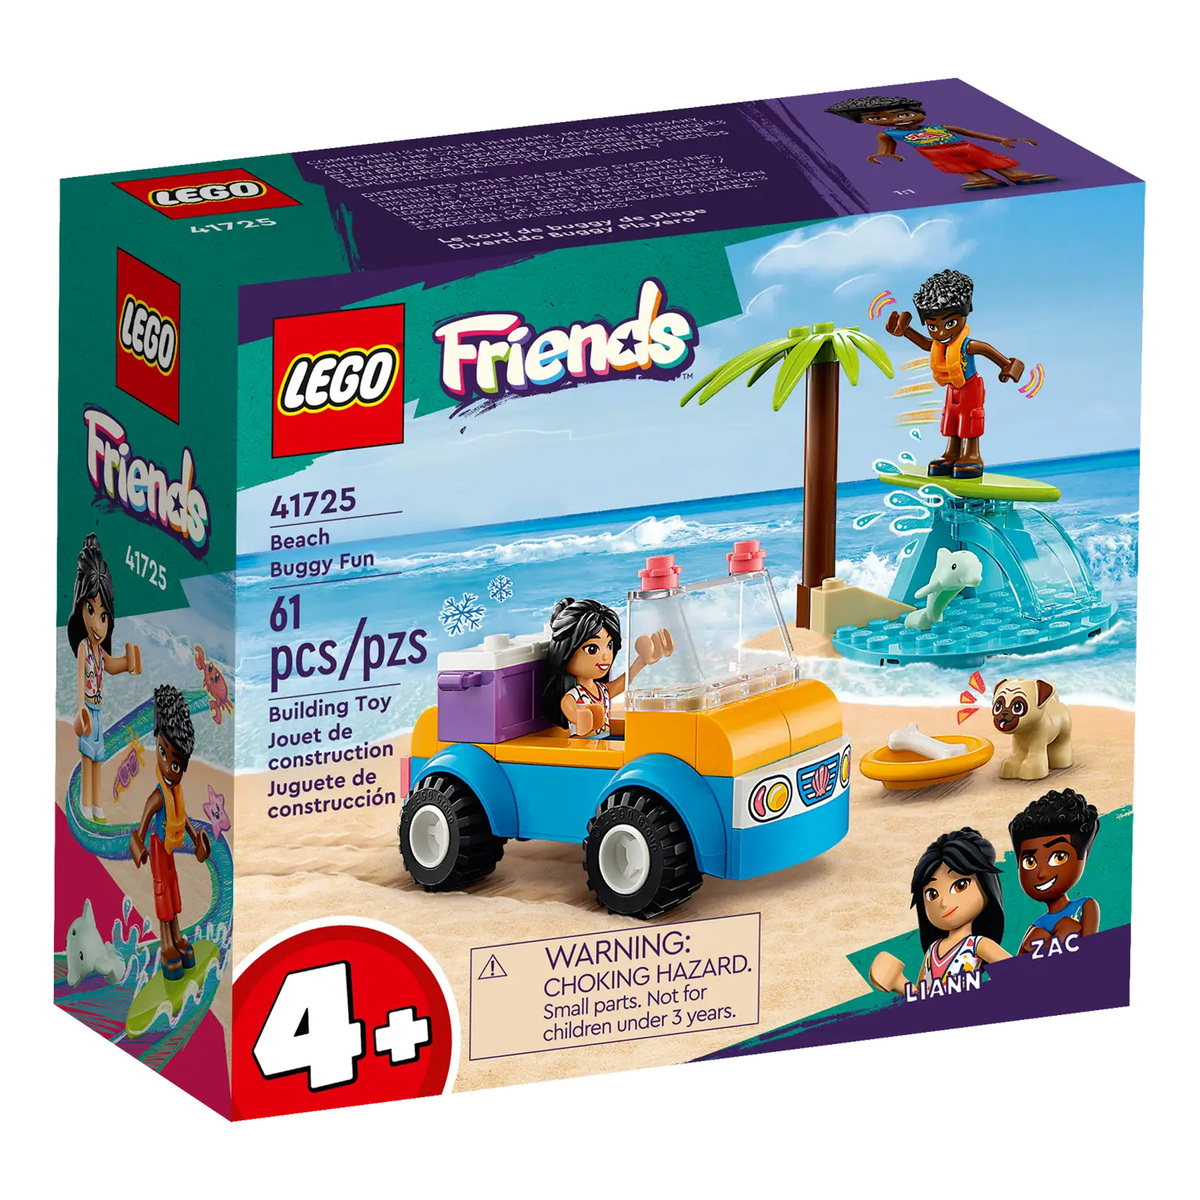 Lego Beach Buggy Fun, 41725